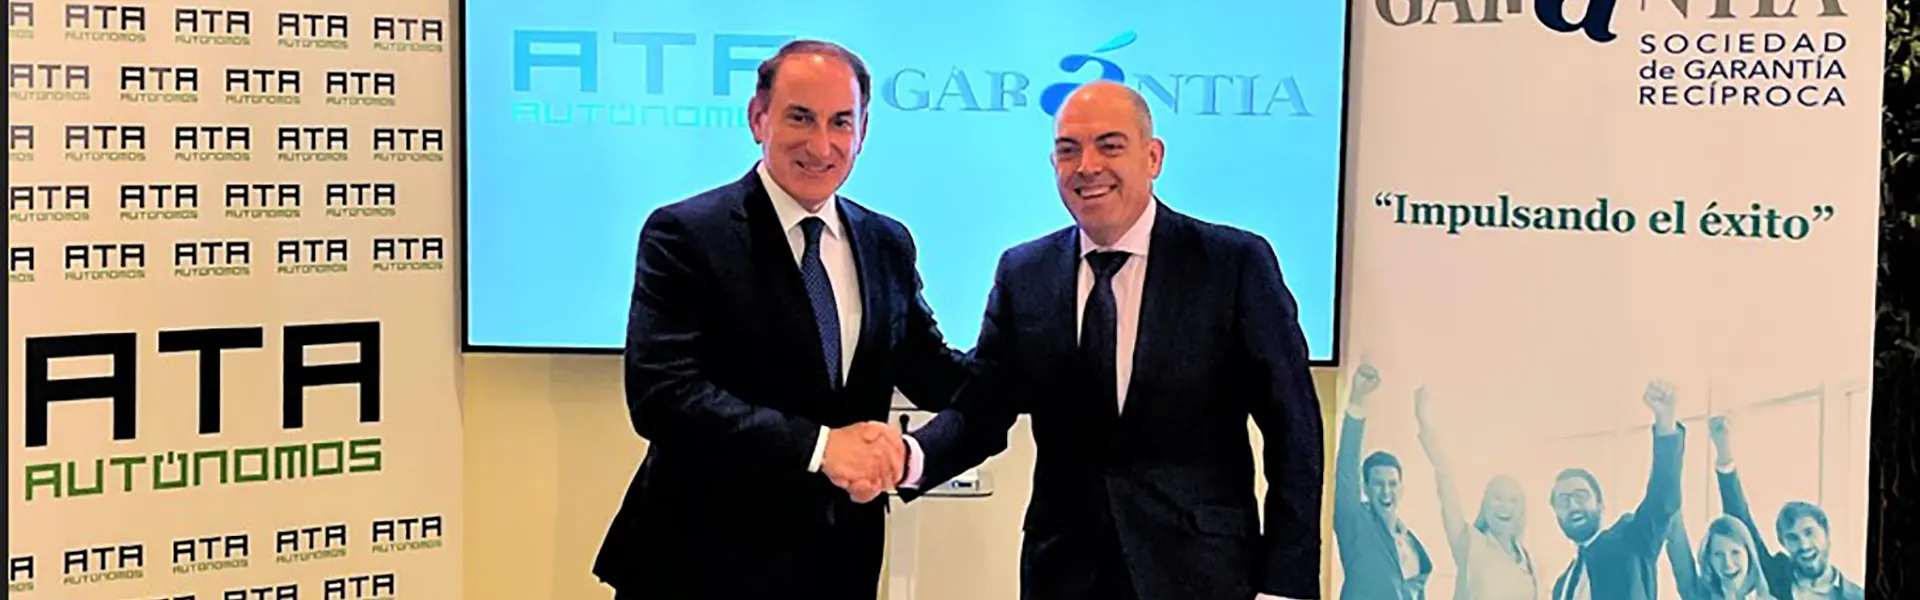 Garántia y ATA sellan una alianza para facilitar e impulsar la financiación a autónomos andaluces ultimas noticias cesgar